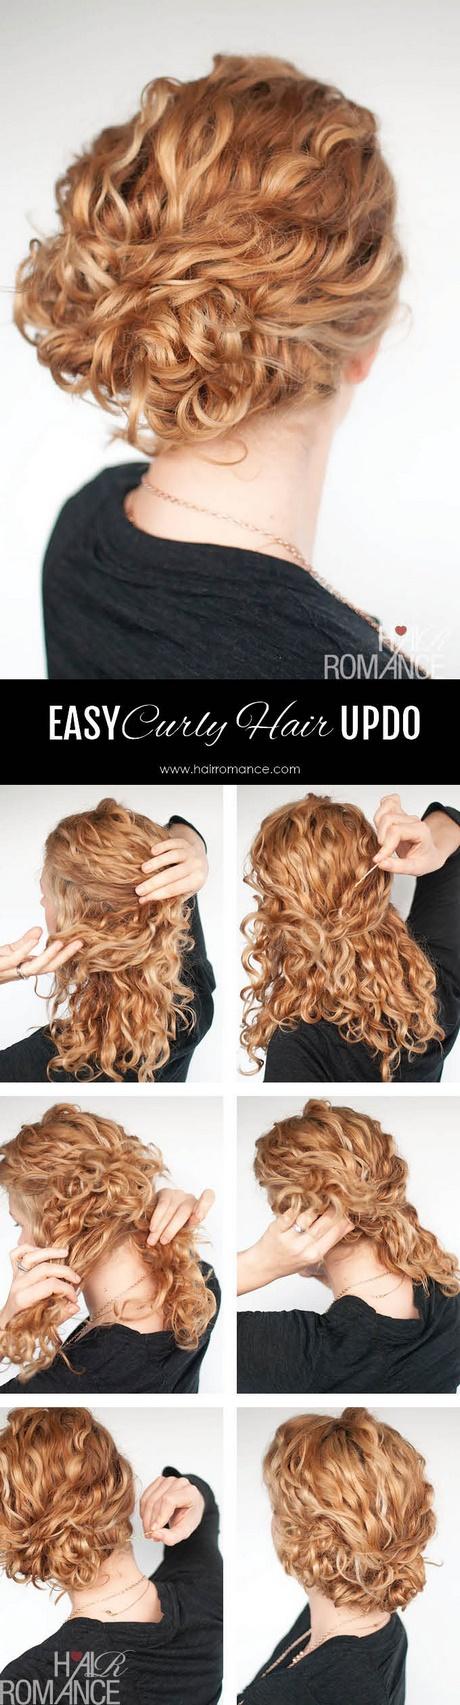 Easy put up hairstyles easy-put-up-hairstyles-04_8